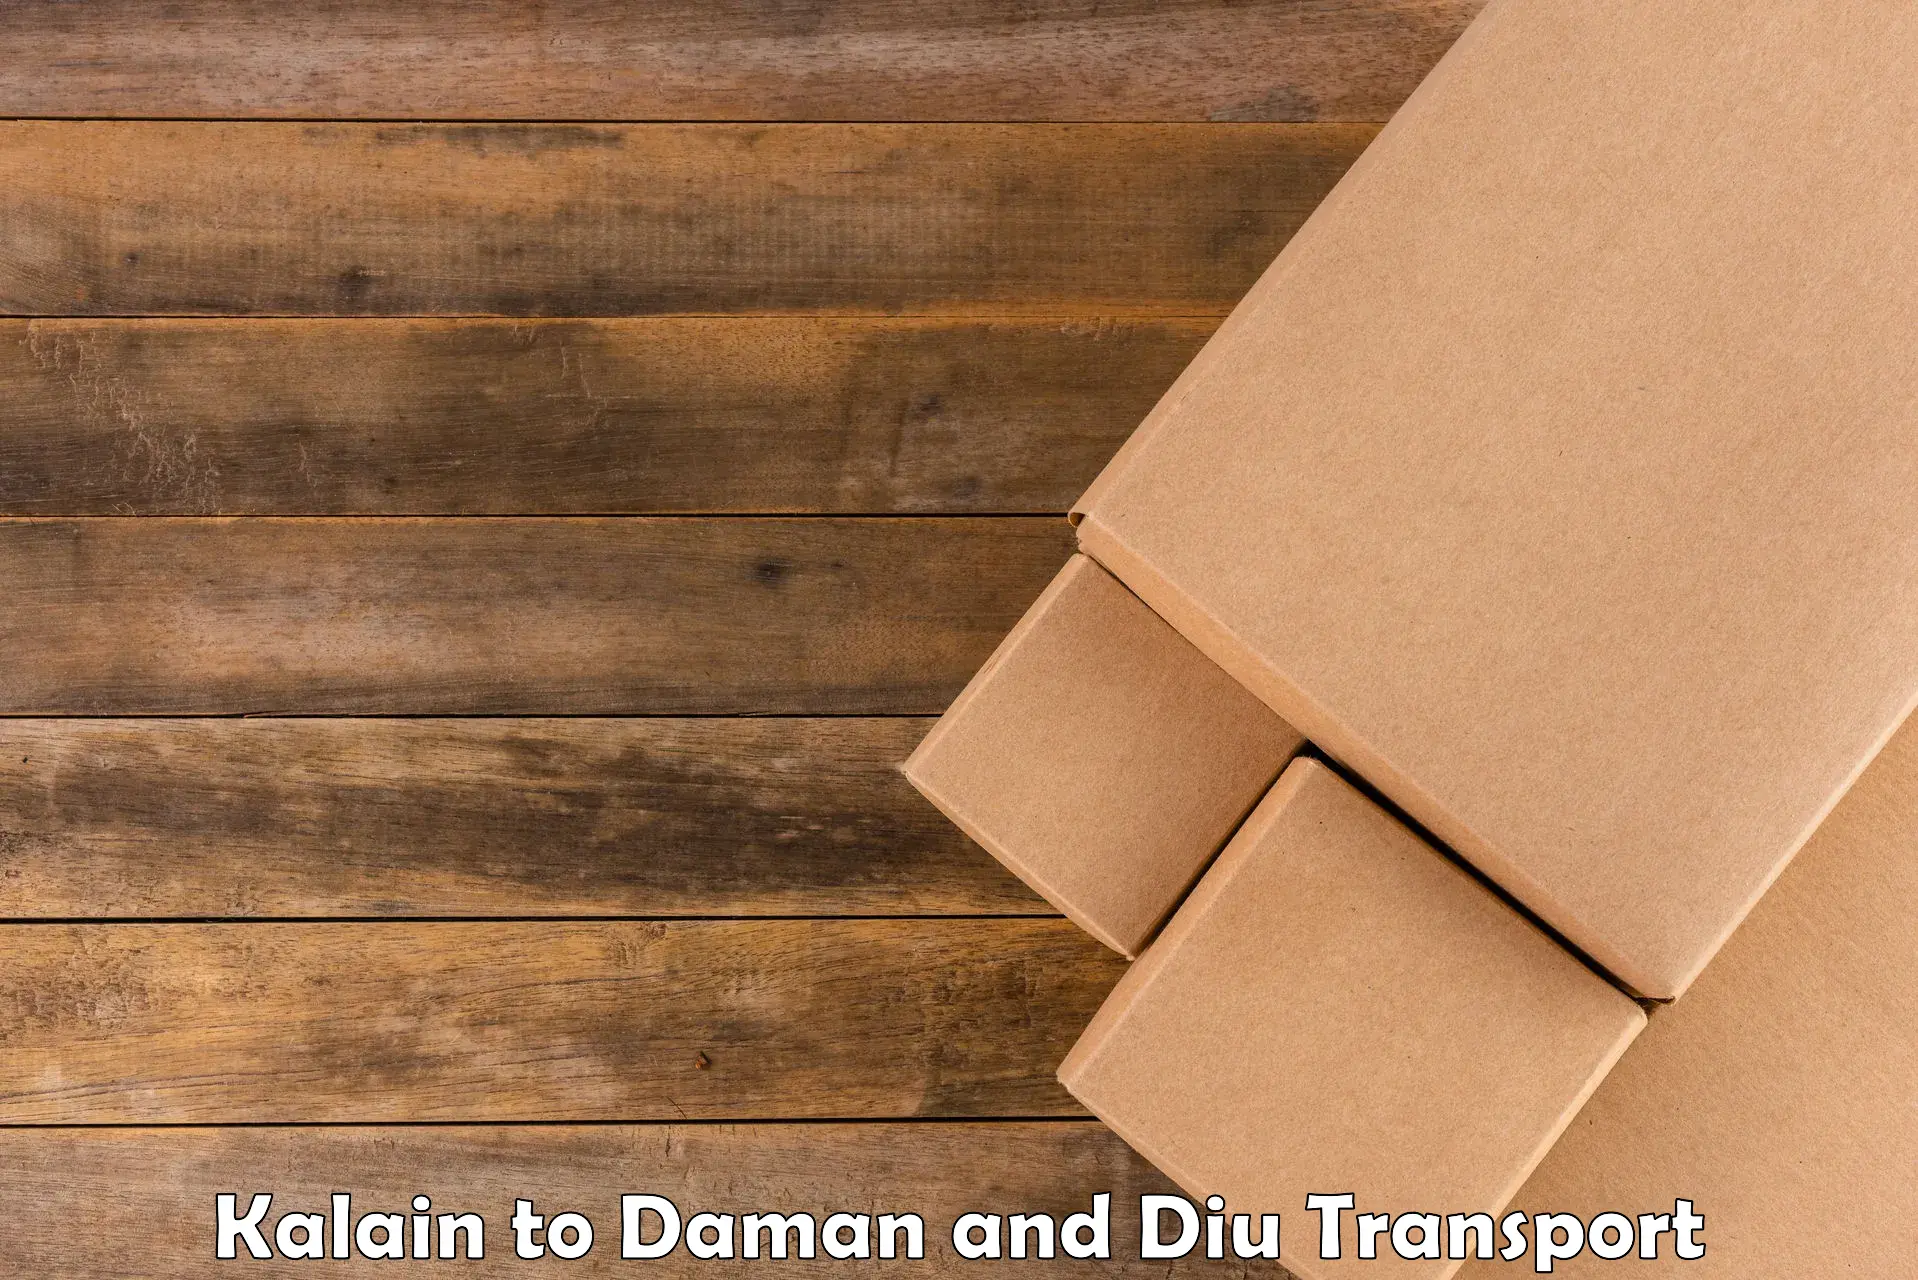 Vehicle transport services Kalain to Daman and Diu